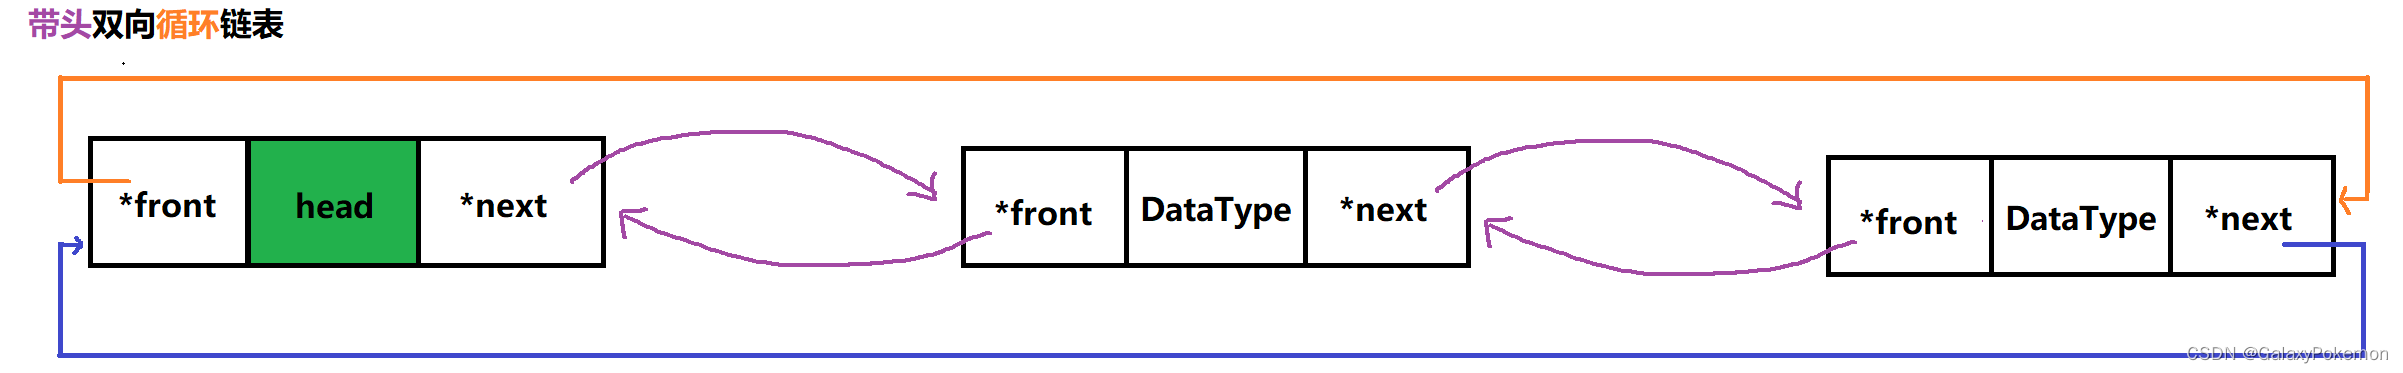 数据结构 - 链表详解（二）—— 带头双向循环链表